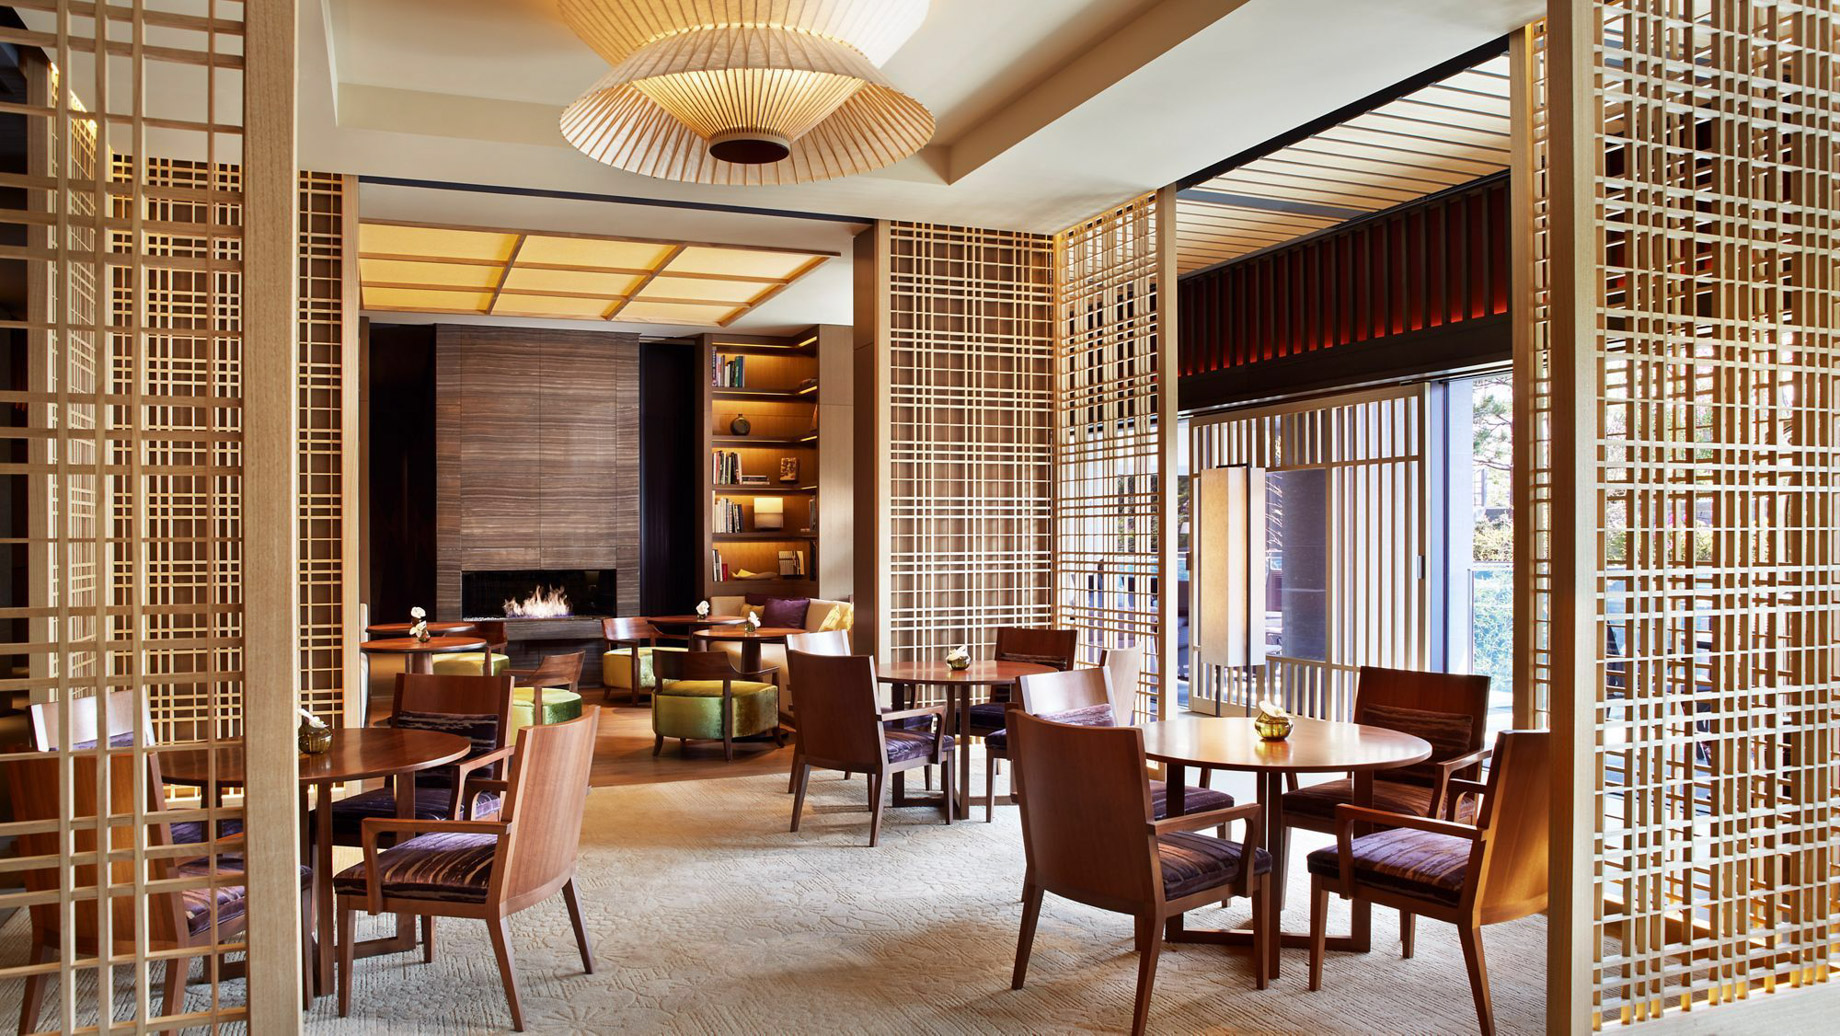 The Ritz-Carlton, Kyoto Hotel – Nakagyo Ward, Kyoto, Japan – The Lobby Lounge